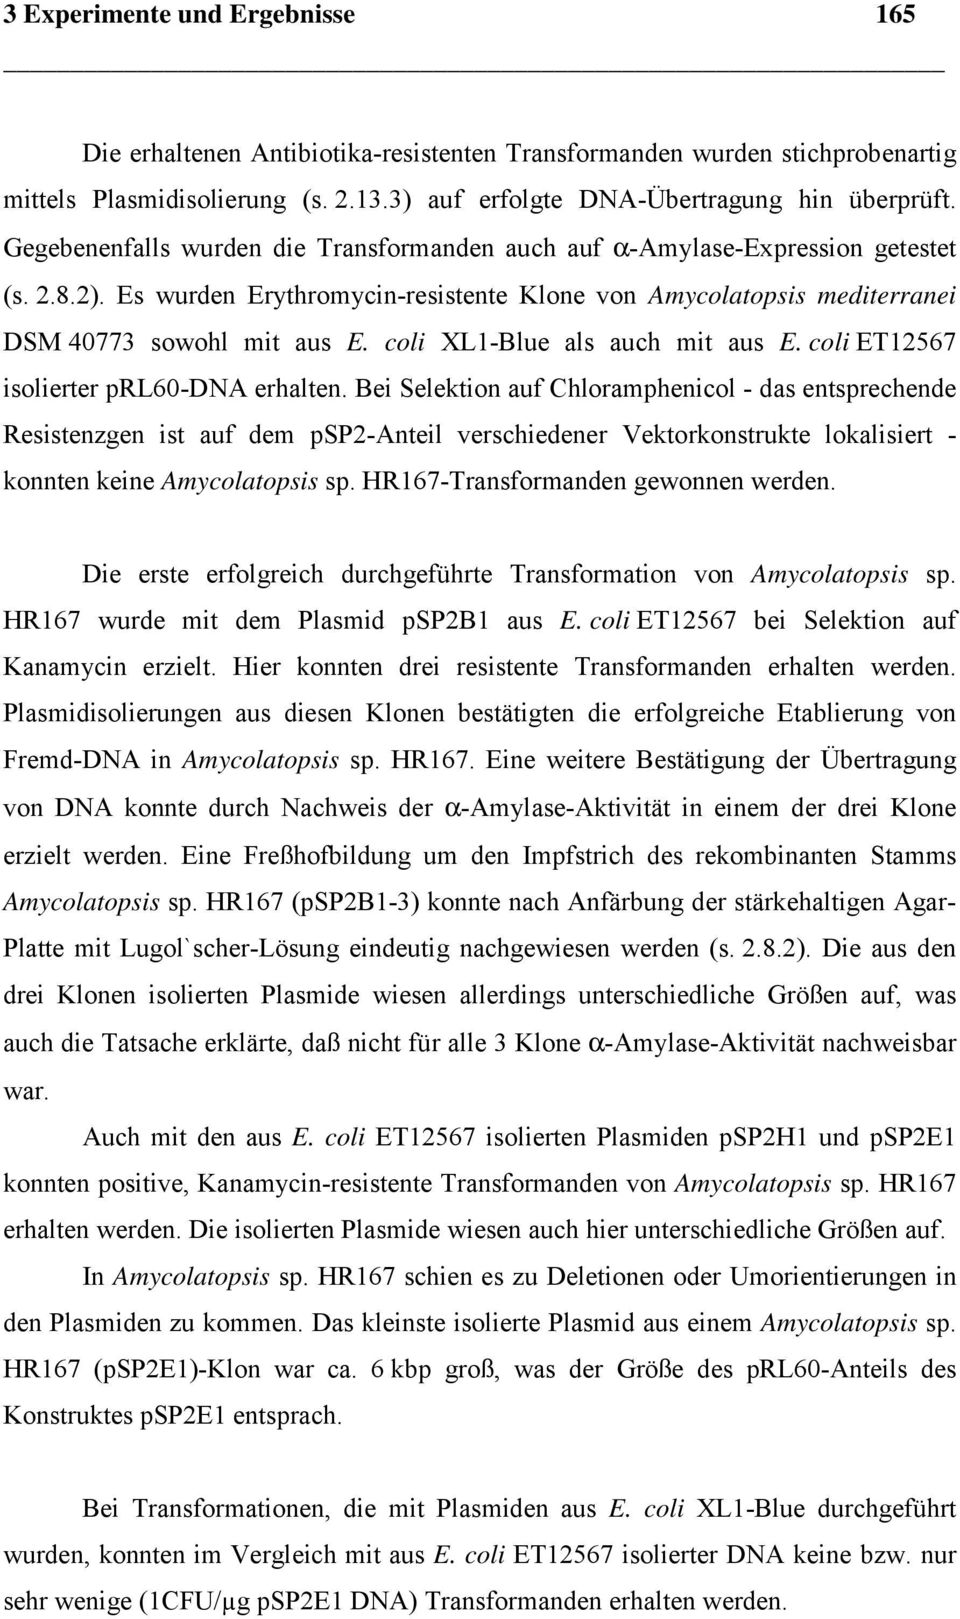 coli XL1Blue als auch mit aus E. coli ET12567 isolierter prl60dna erhalten.